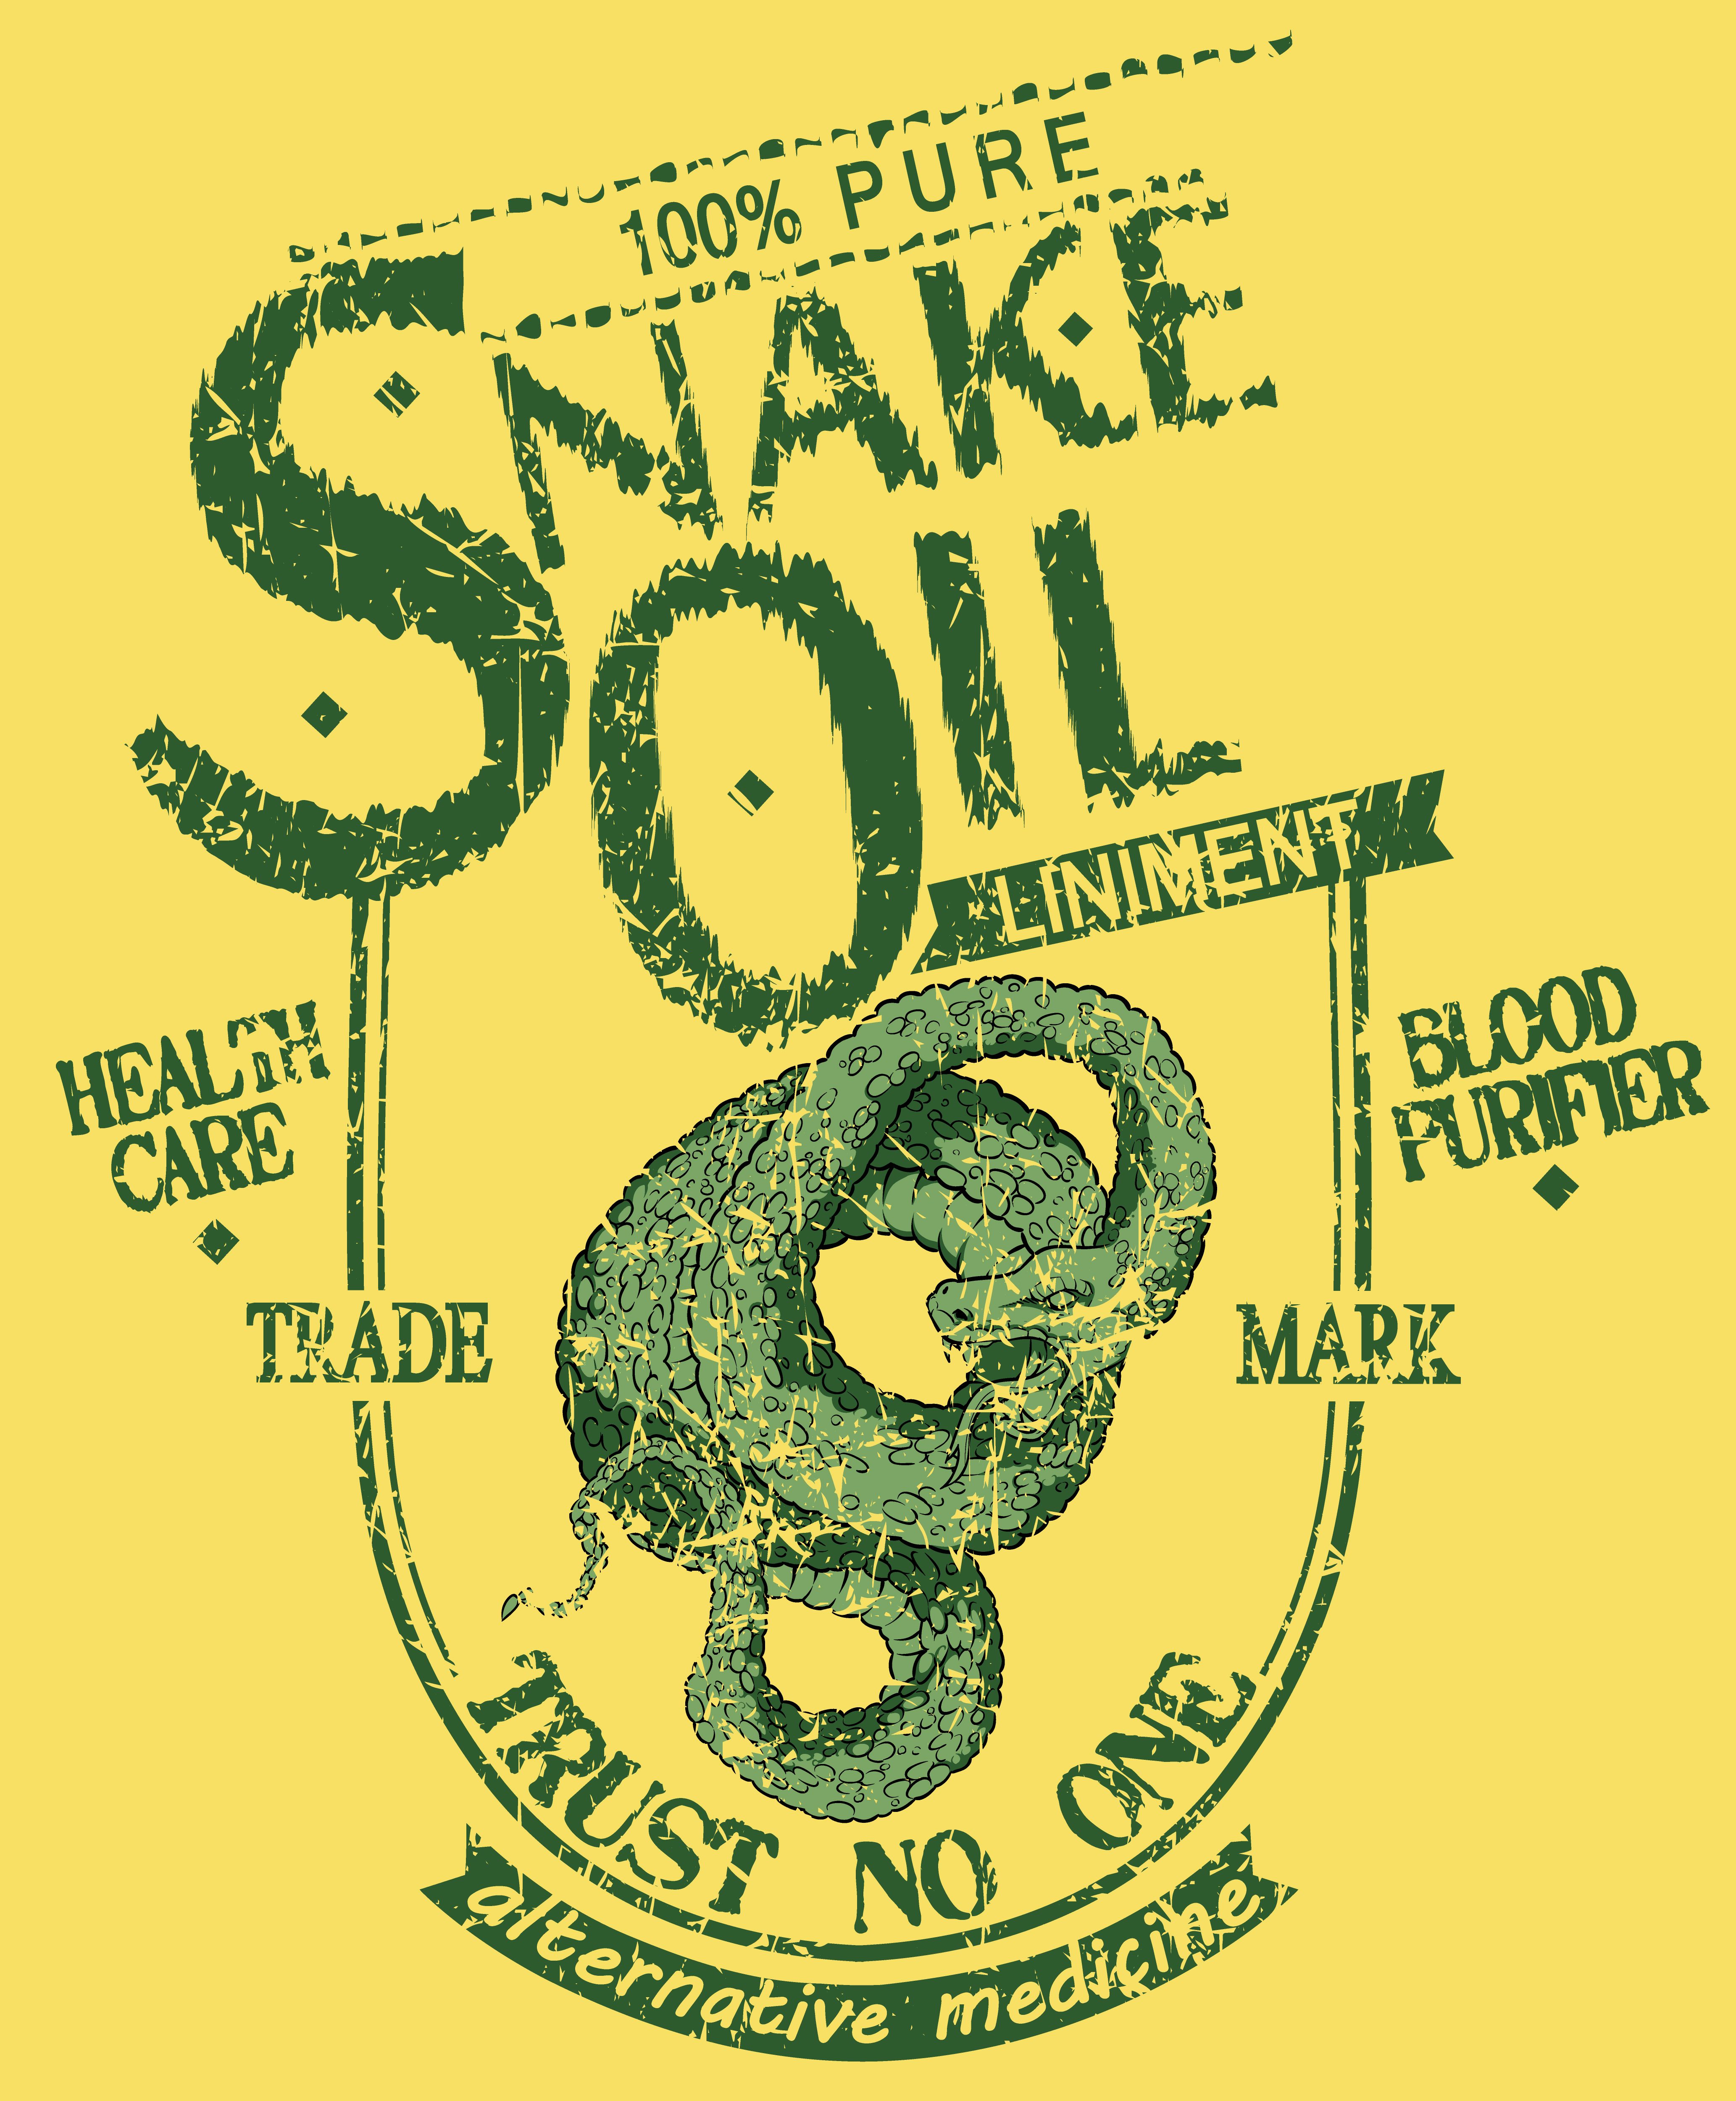 https://depositphotos.com/40706095/stock-illustration-snake-oil.html